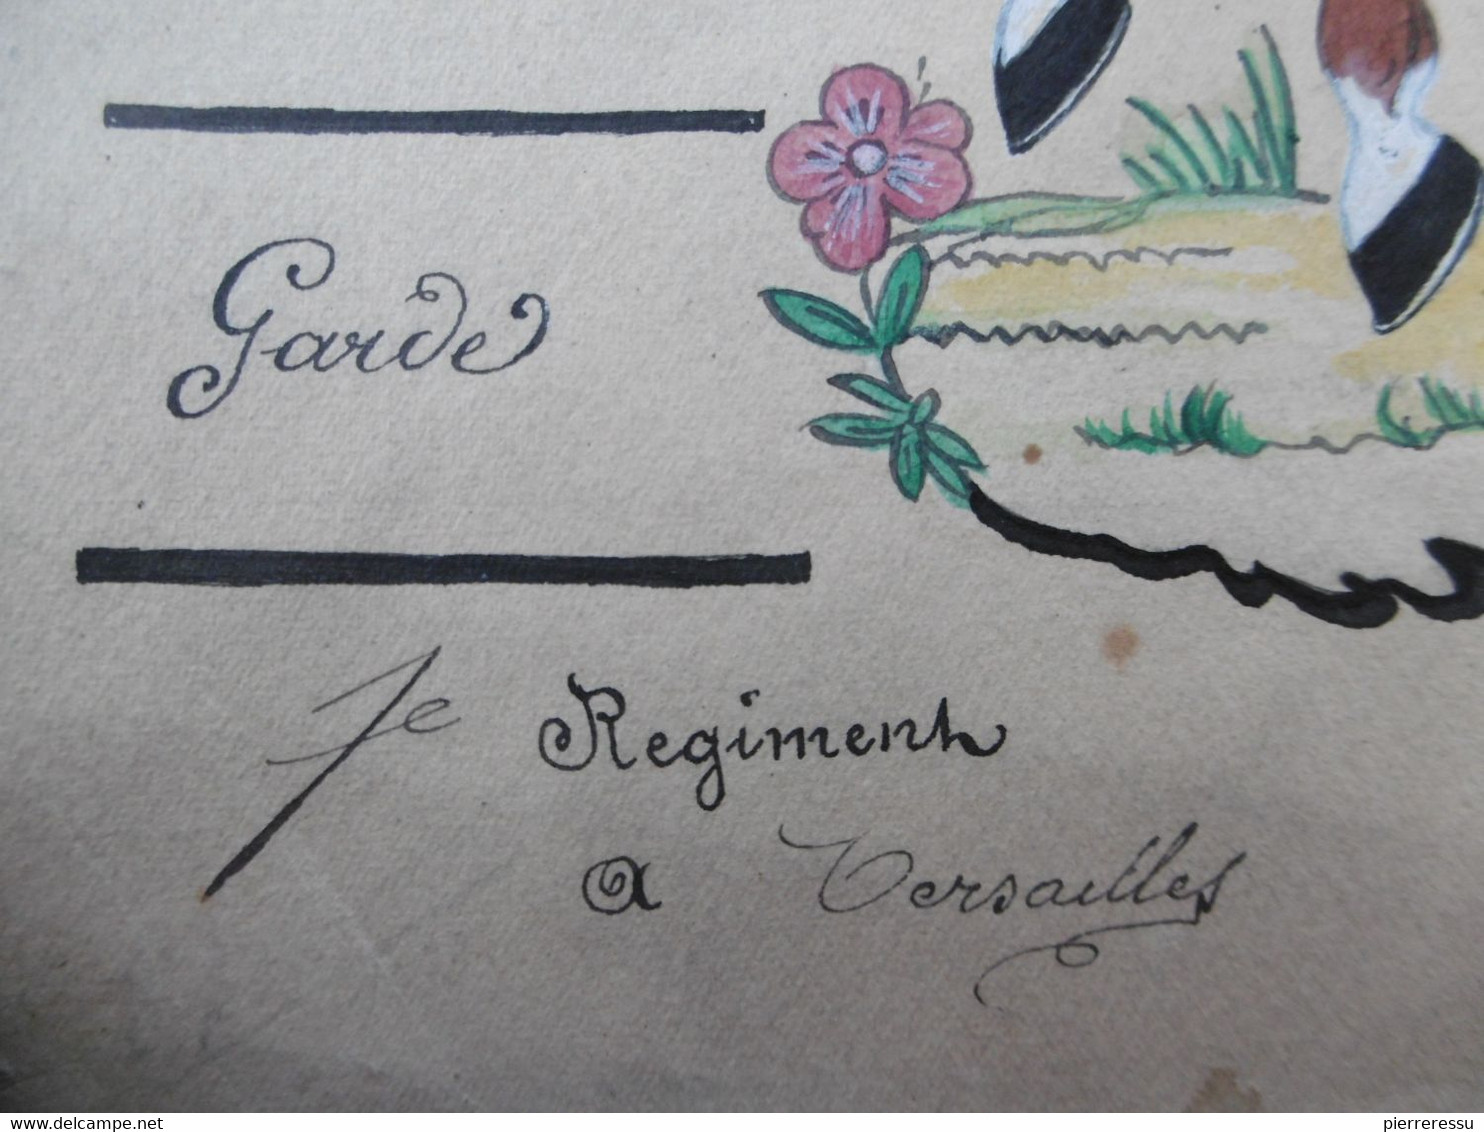 GARDE IMPERIALE GARDE D HONNEUR 1er REGIMENT DESSIN A LA GOUACHE 1813 BONAPARTE & JOSEPHINE - Documents